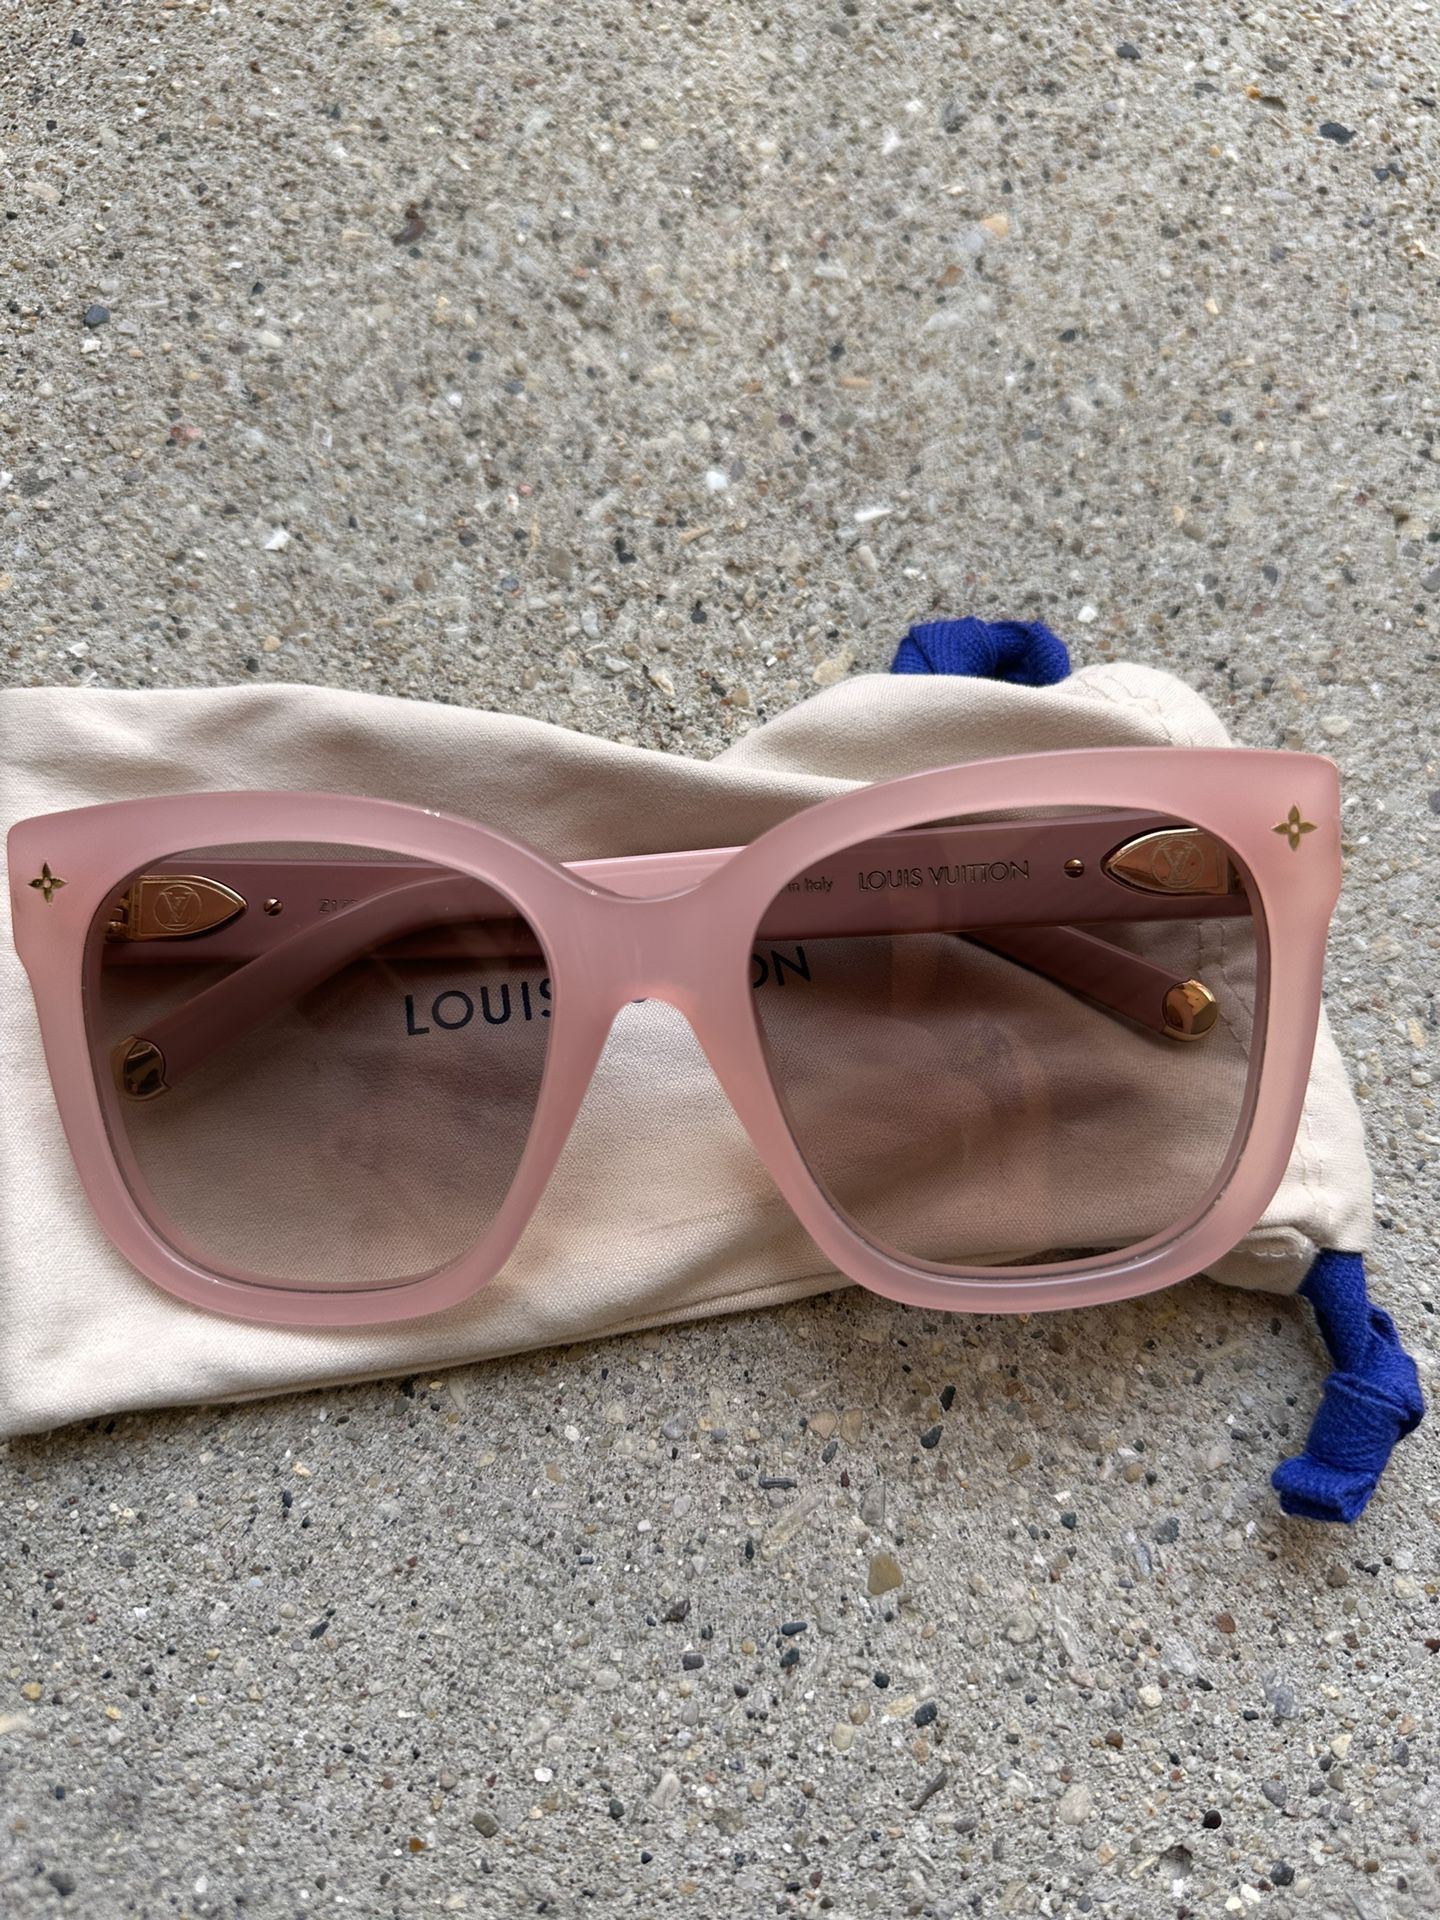 Louis Vuitton Sunglasses, Beige, Women for Sale in Glendale